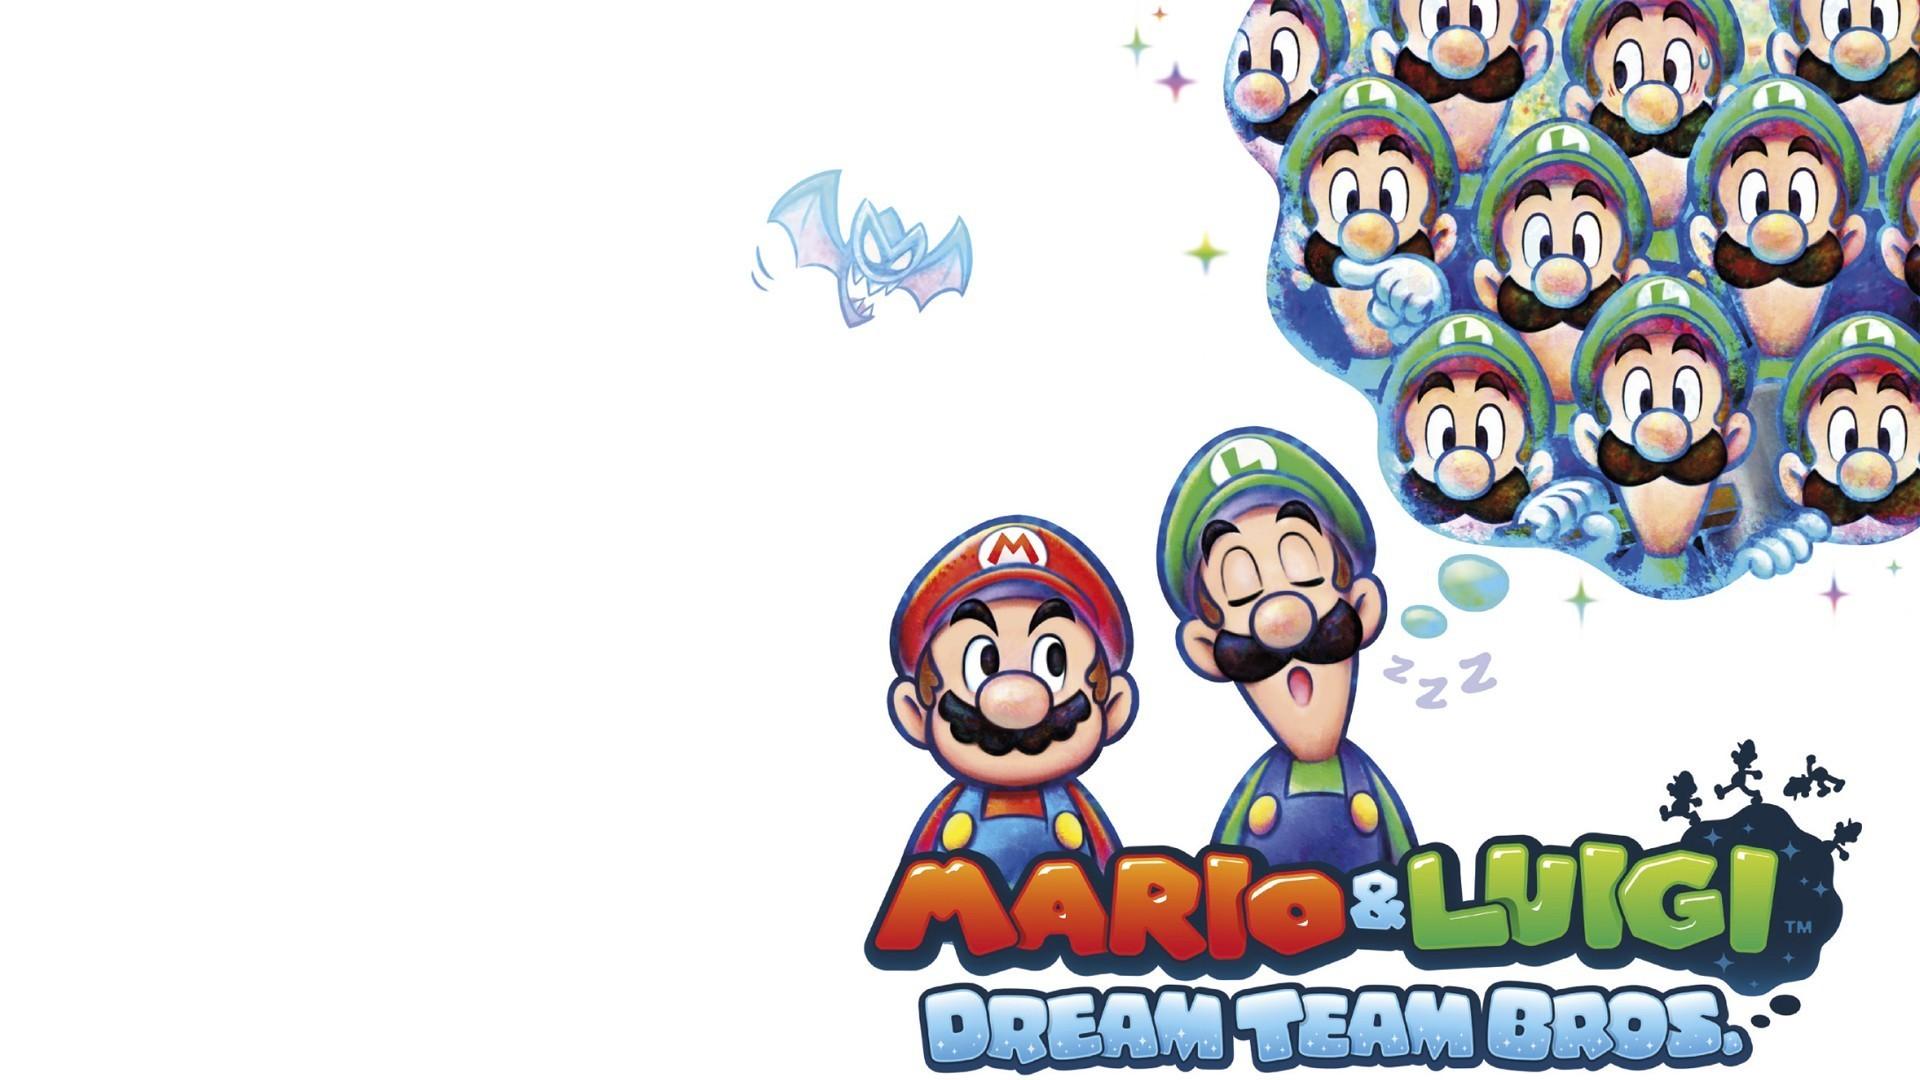 Mario luigi dream. Mario and Luigi Dream Team. Dream Team Bros 2вы. Mario and Luigi Dream Team Wallpaper. Mario Dream Team Wallpaper.